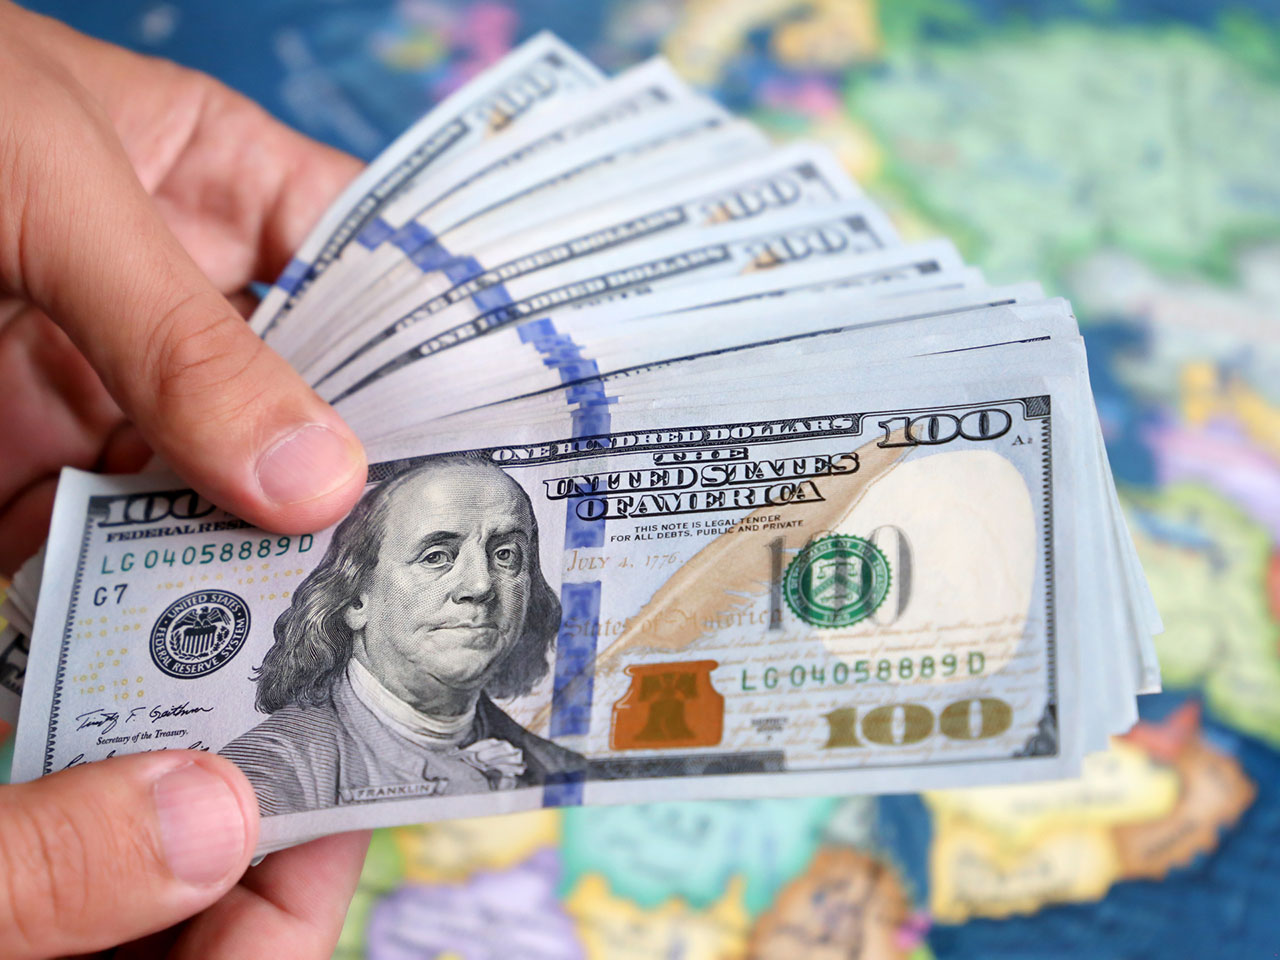 الدولار يتحرك ضمن نطاق ضيق مع ترقب لتطورات الشرق الأوسط وكلمة لرئيس المركزي الأمريكي